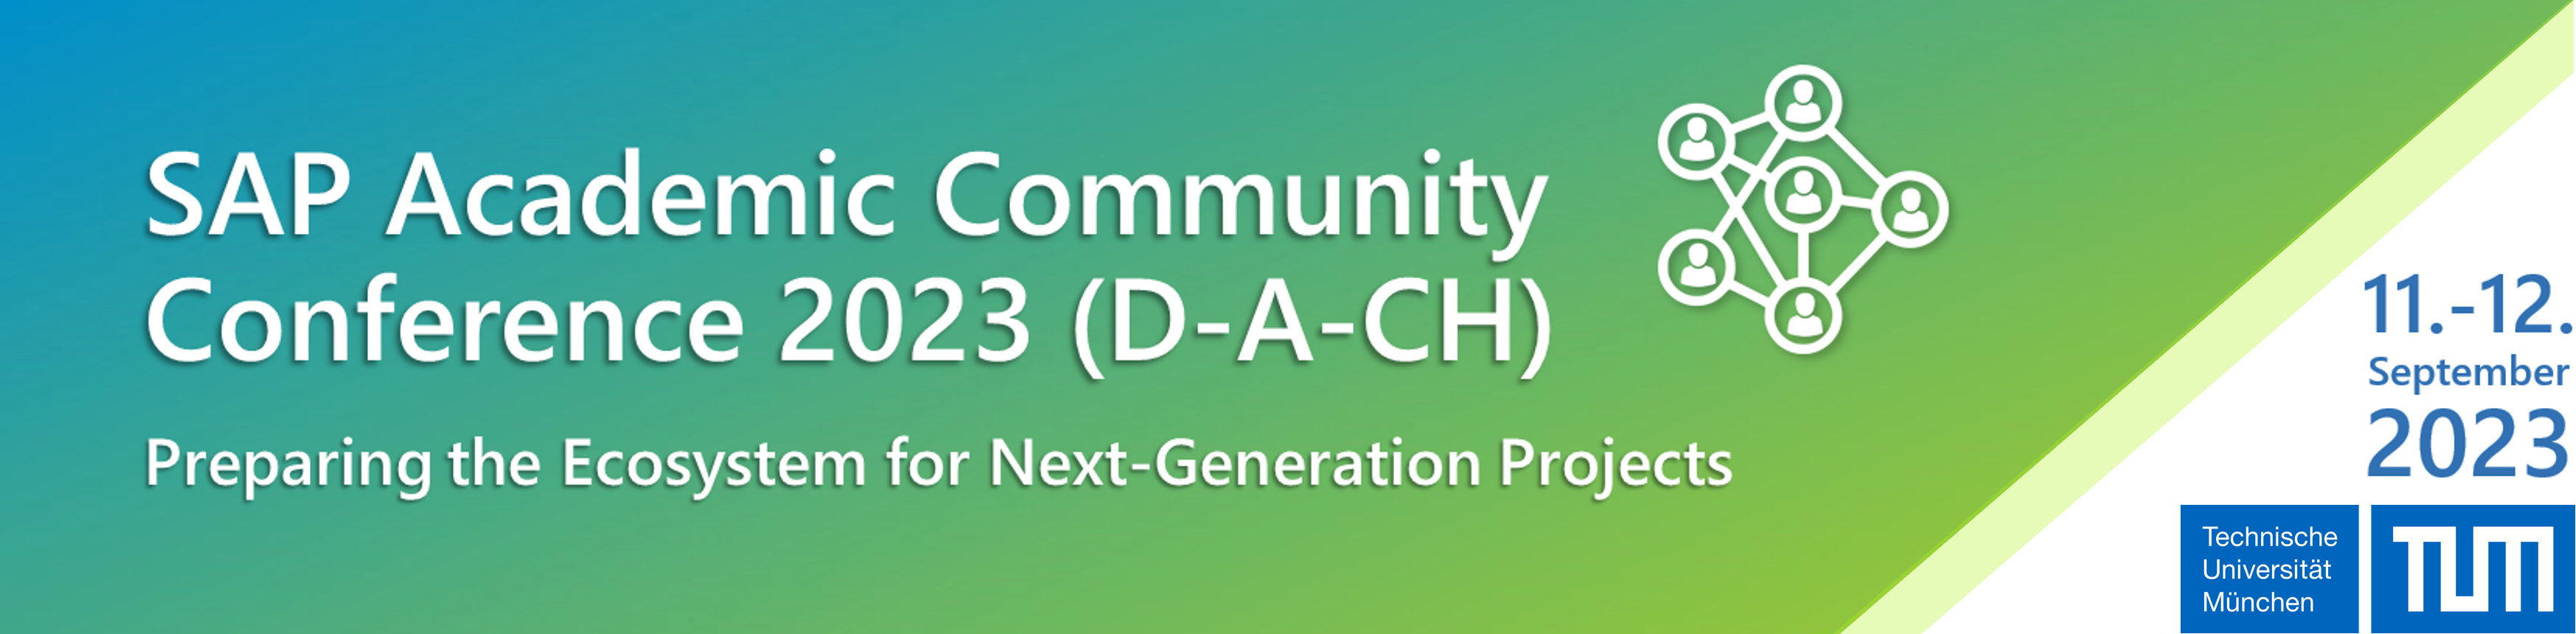 SAP Academic Community Conference 2023 (D-A-CH)